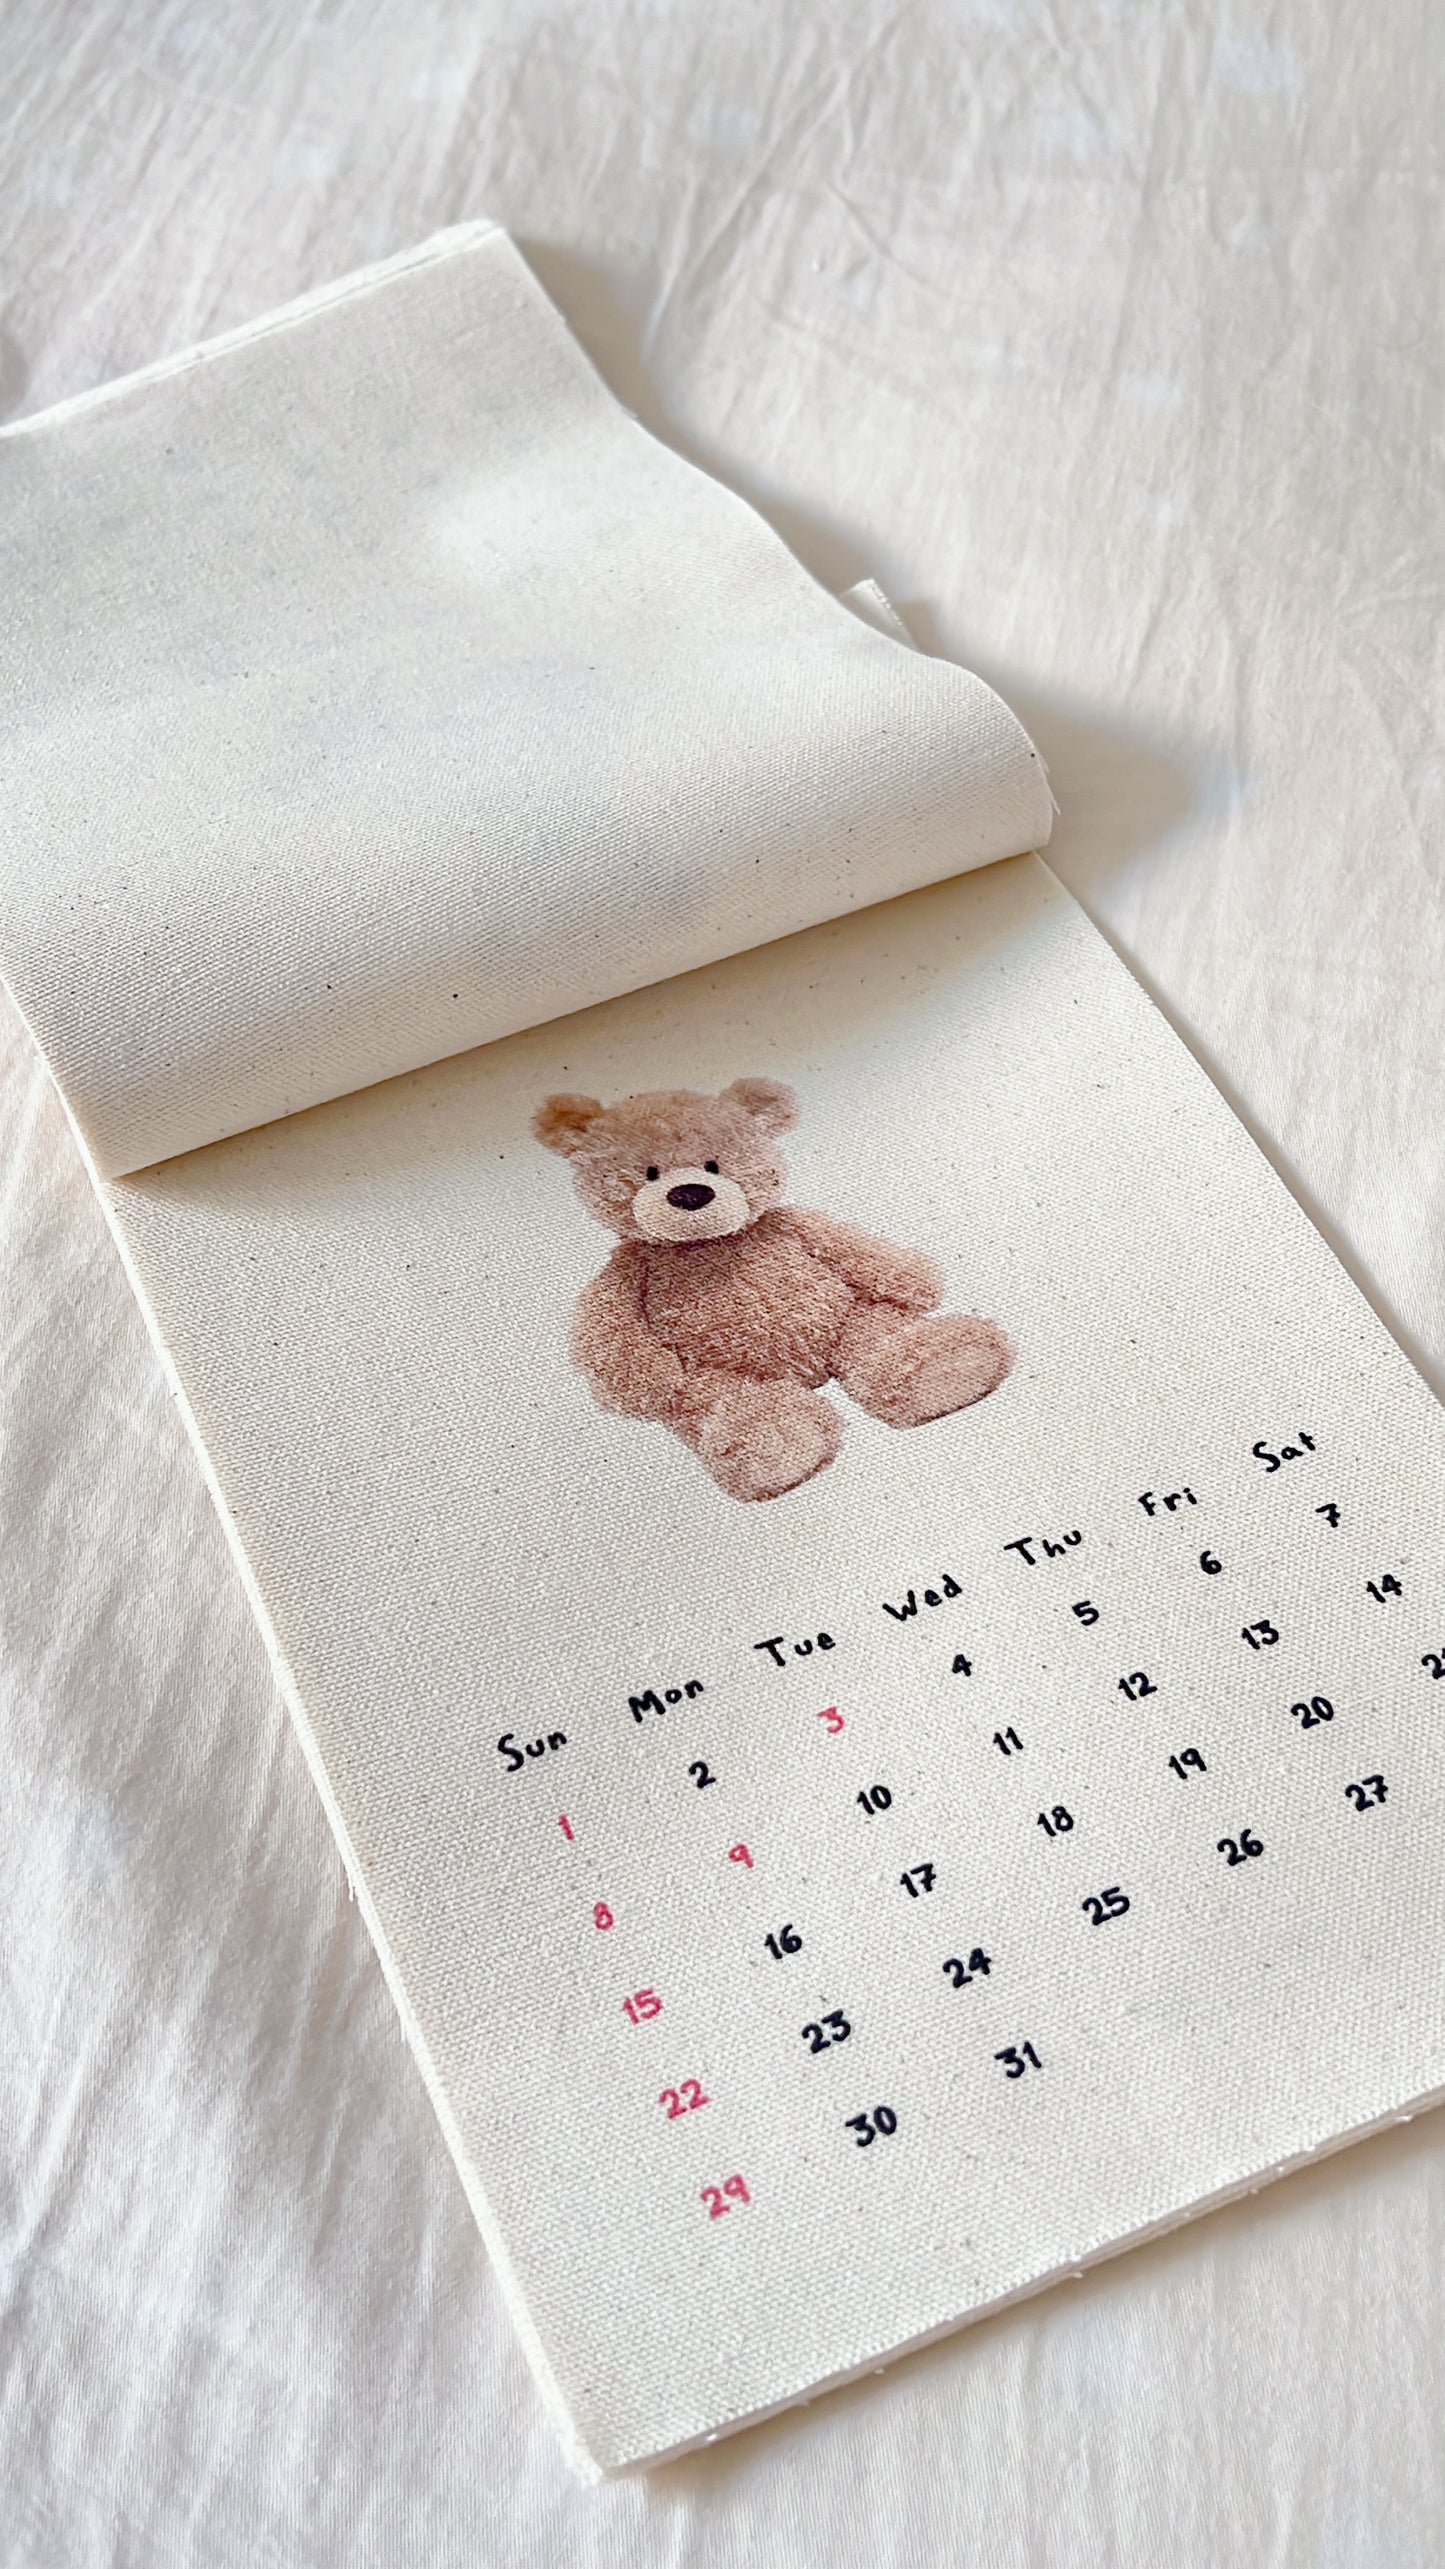 jeegugonggan Kitsch Bear Calendar